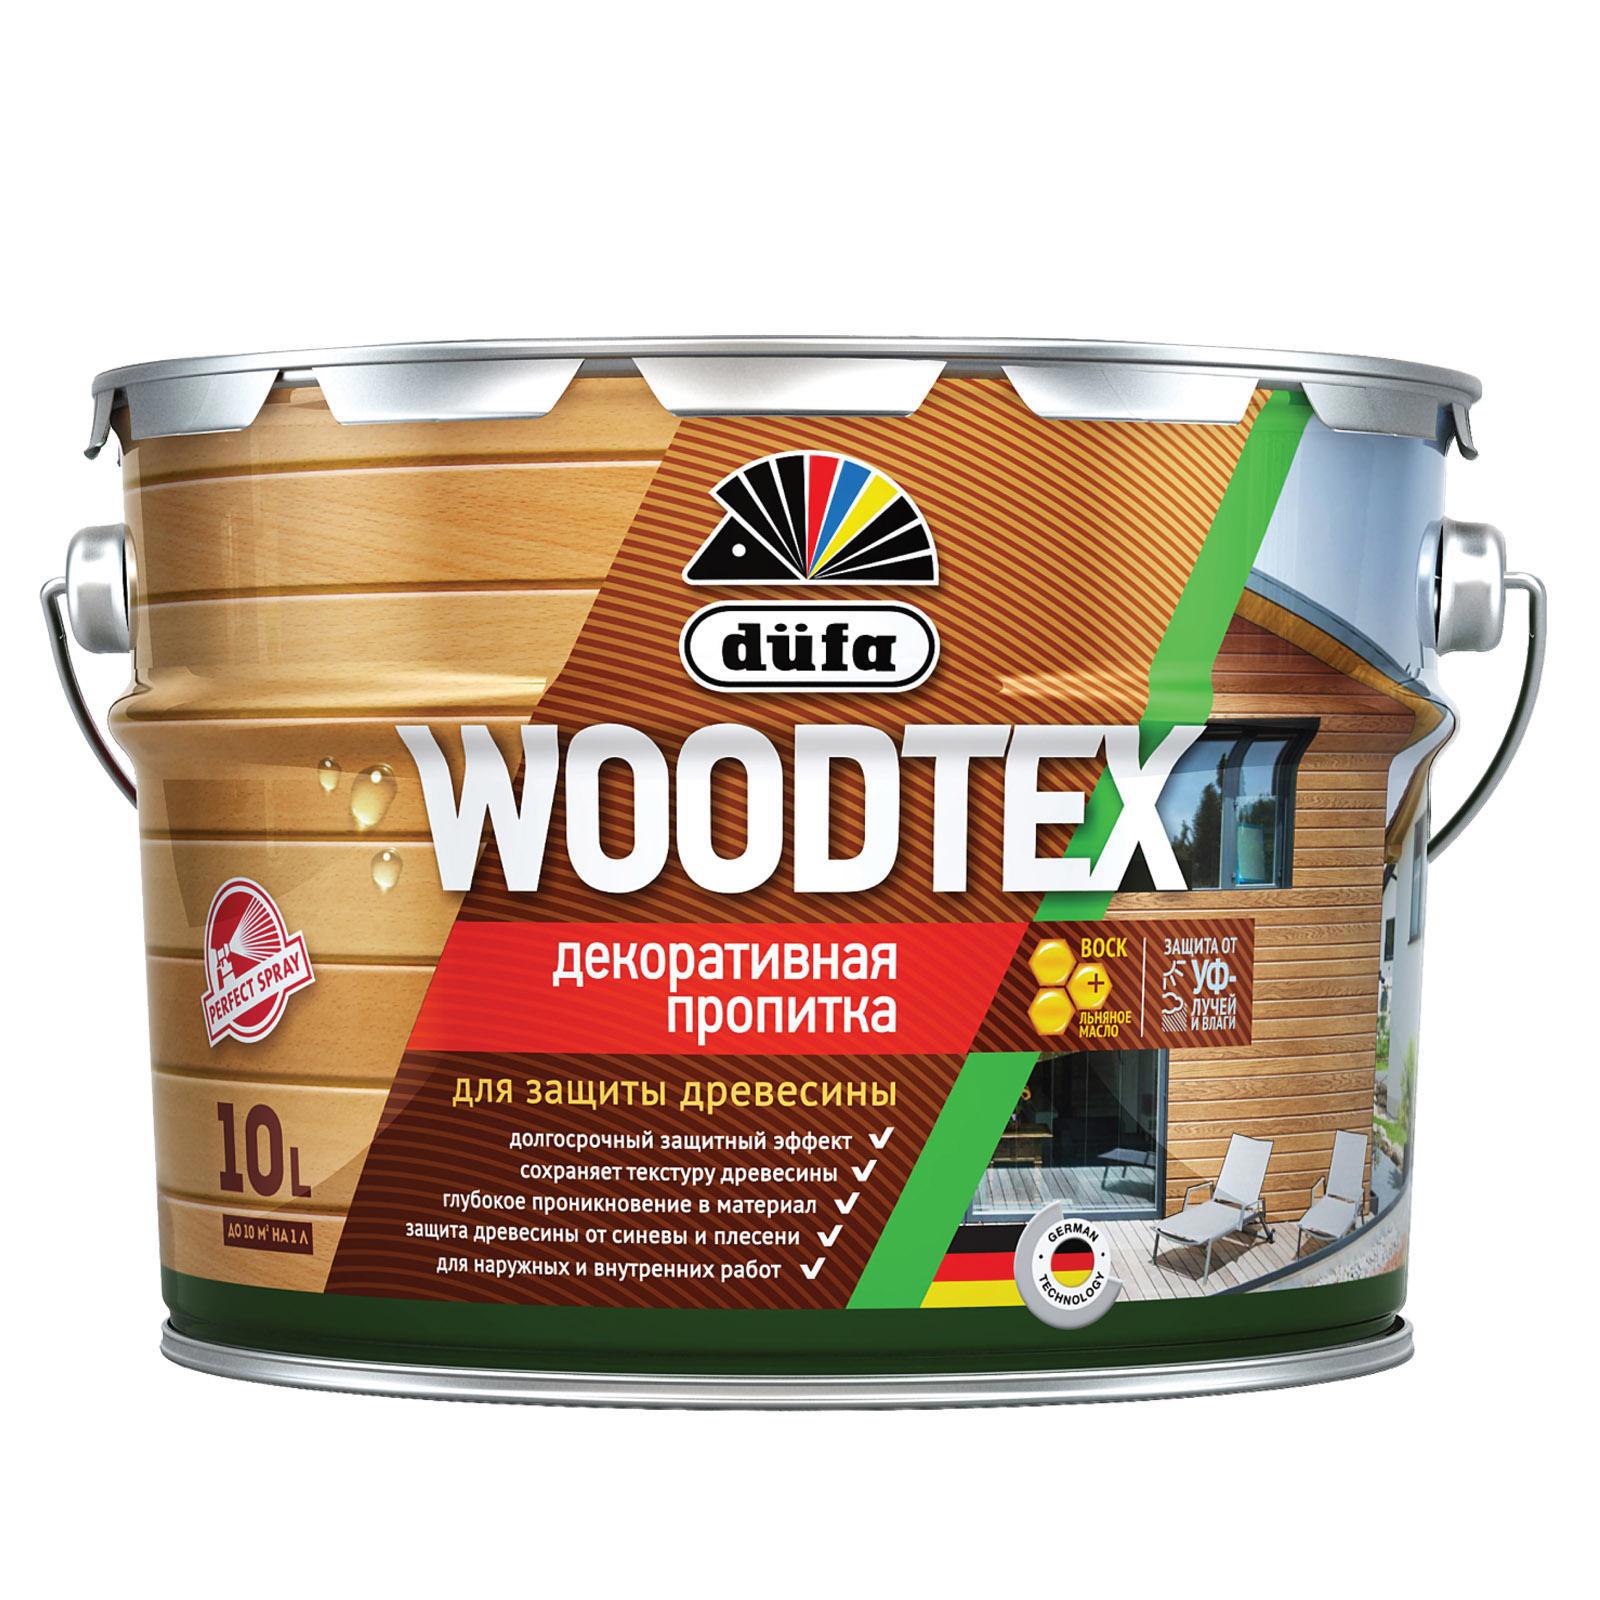 90194555 Пропитка декоративная для защиты древесины алкидная Woodtex рябина 10 л STLM-0128486 DUFA